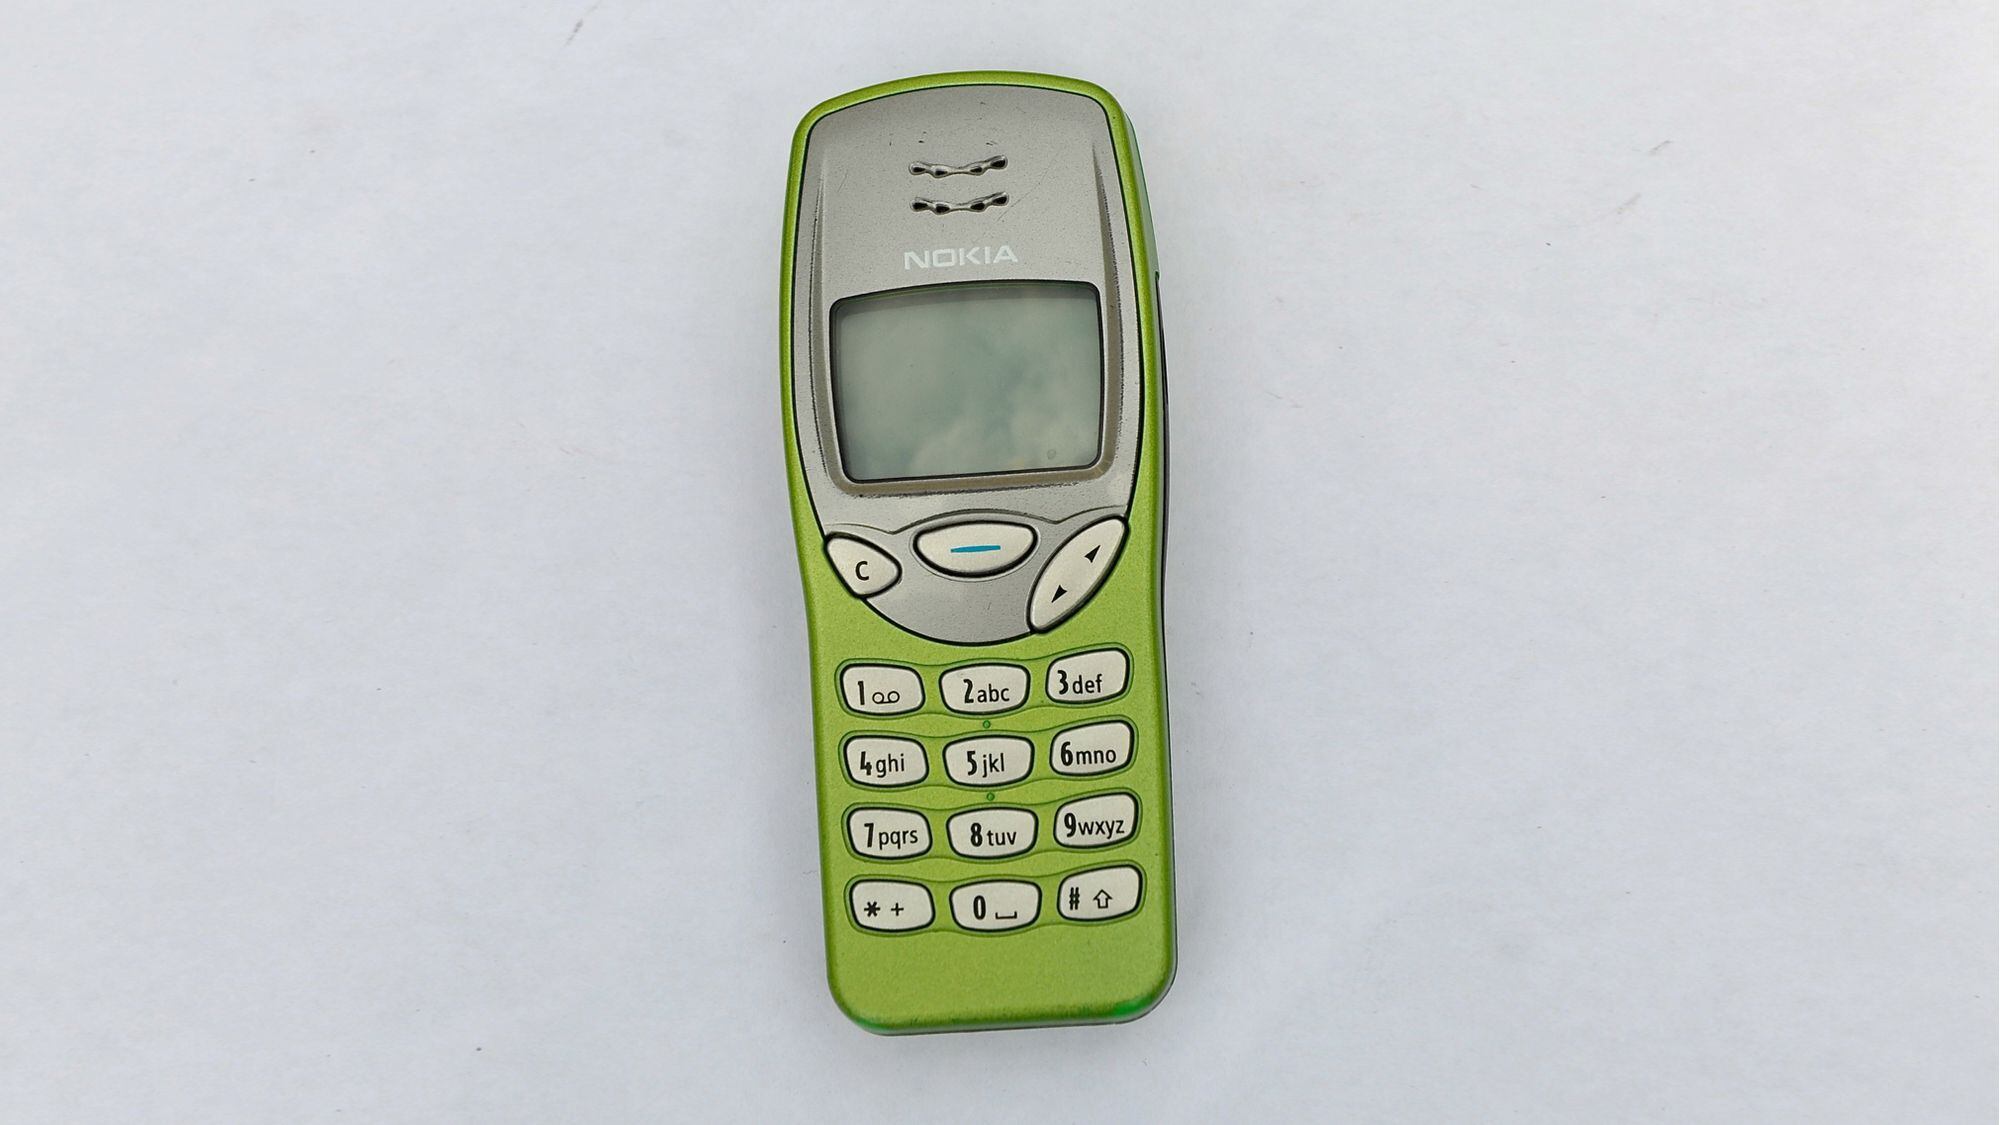 Con sus carcasas intercambiables y juegos, el Nokia 3210 fue pensado para el público joven  